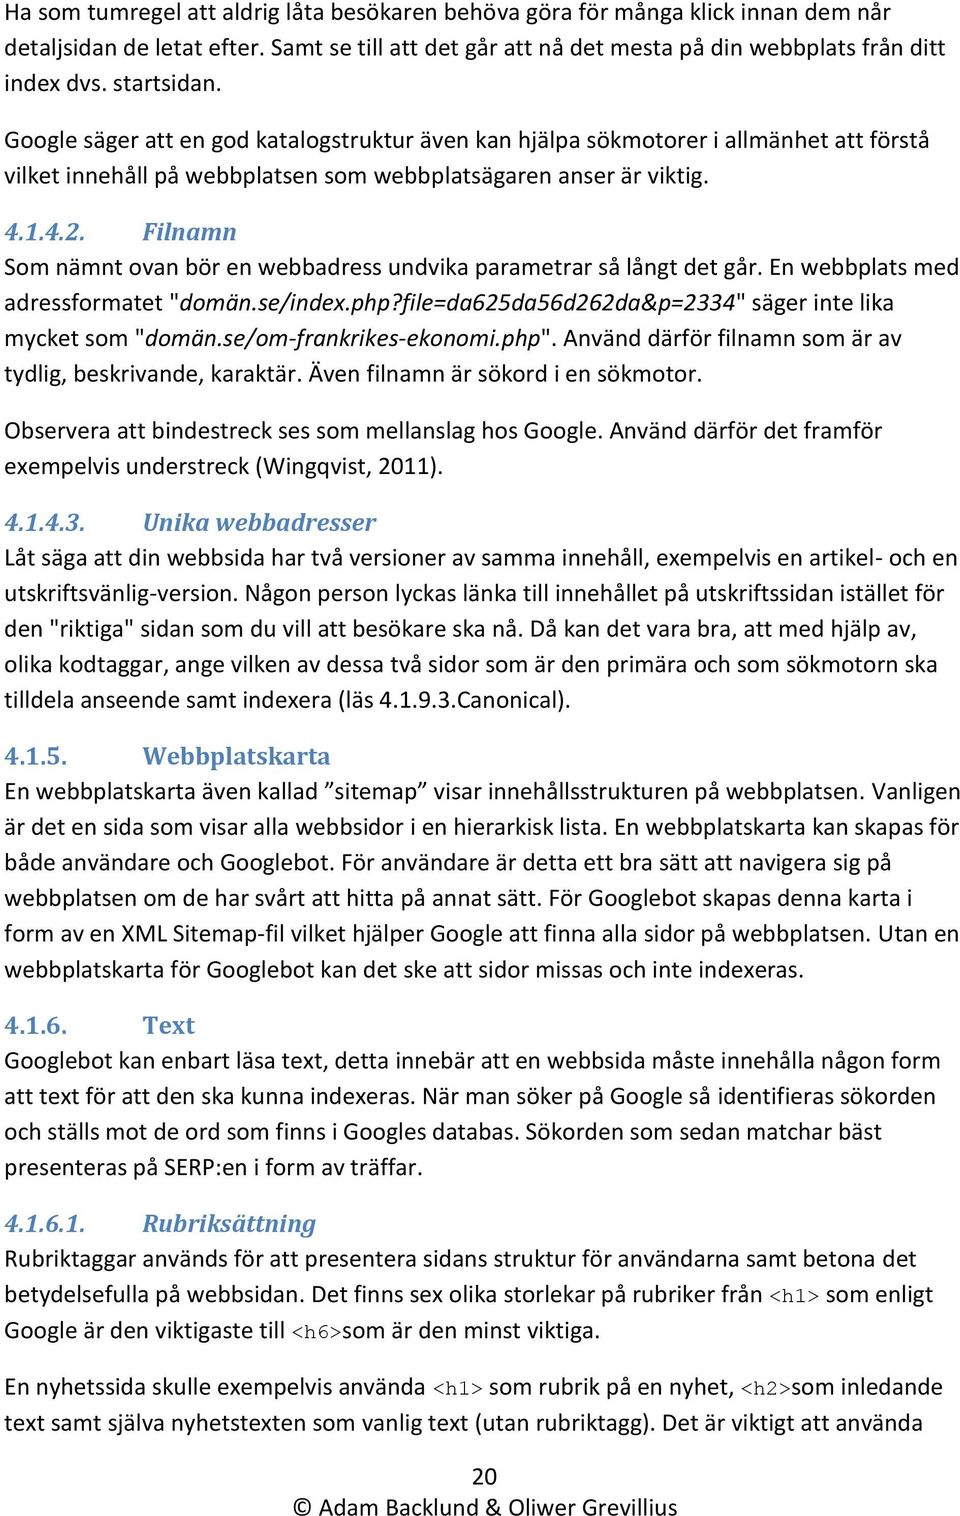 Filnamn Som nämnt ovan bör en webbadress undvika parametrar så långt det går. En webbplats med adressformatet "domän.se/index.php?file=da625da56d262da&p=2334" säger inte lika mycket som "domän.